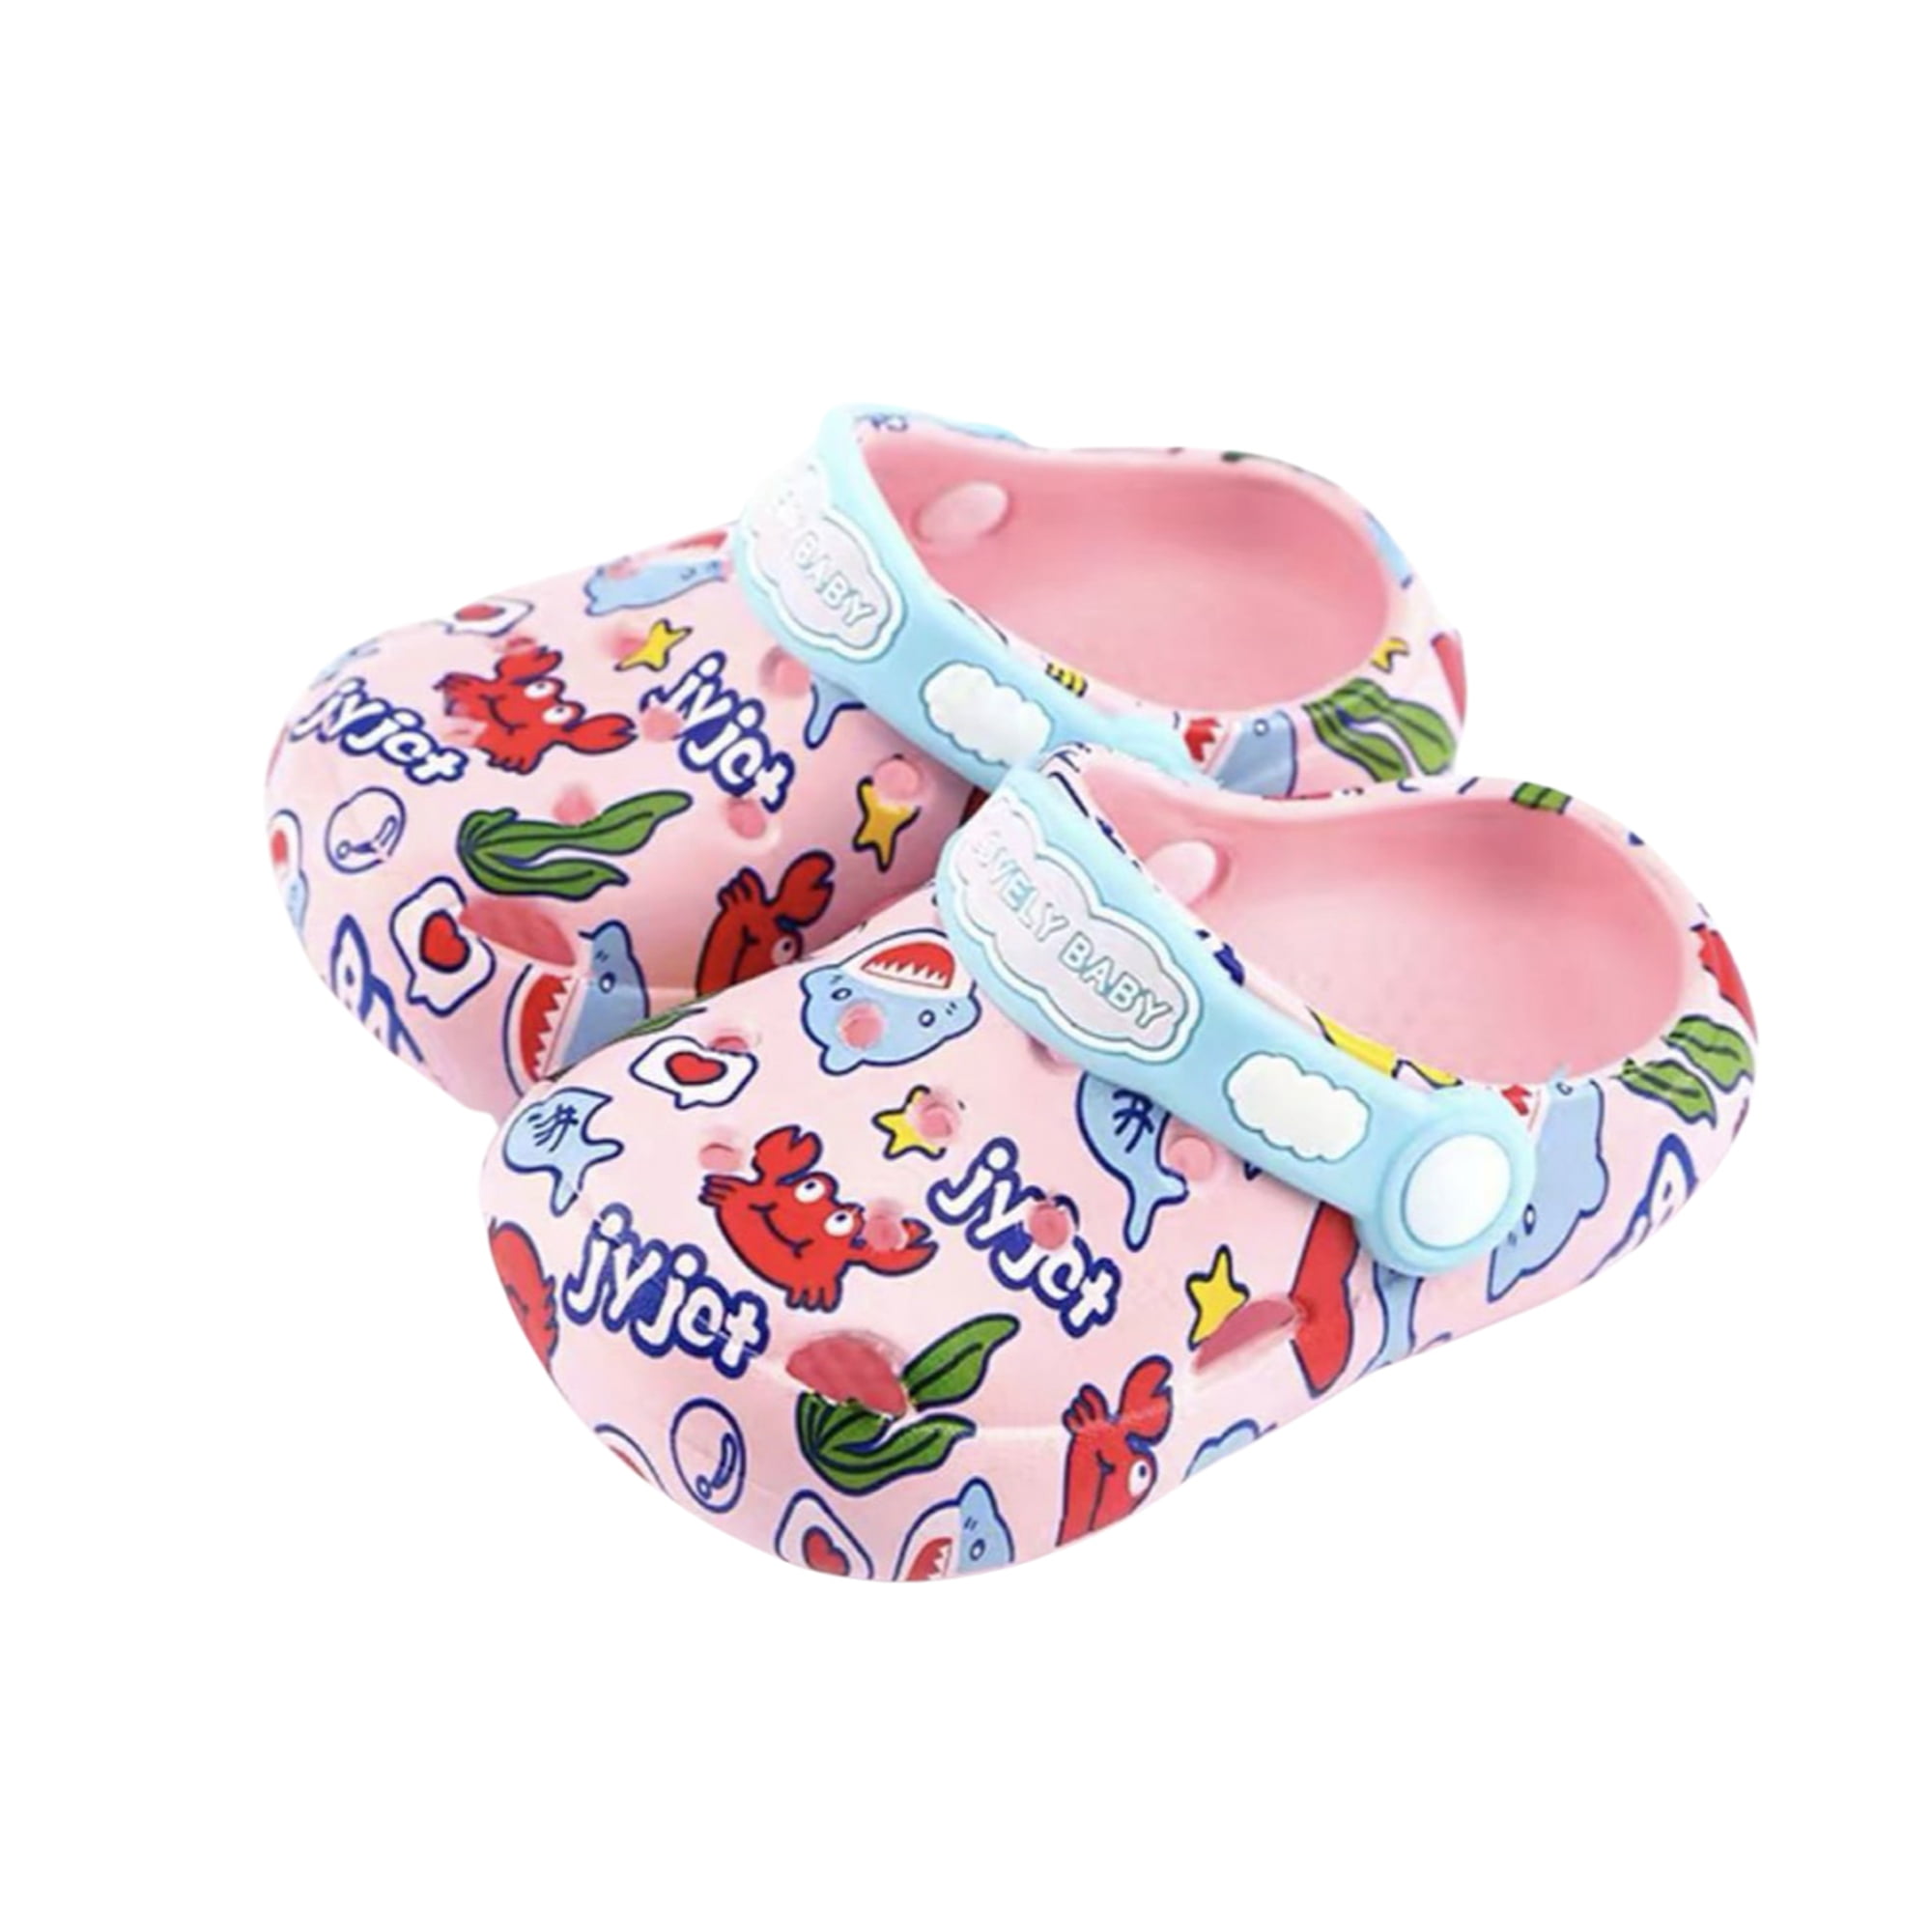 AopnHQ Baby Summer Beach Sandals Comfort Clogs Mules Girls/Boys Toddler Slip On Garden Slippers Kids Lightweight Shoes